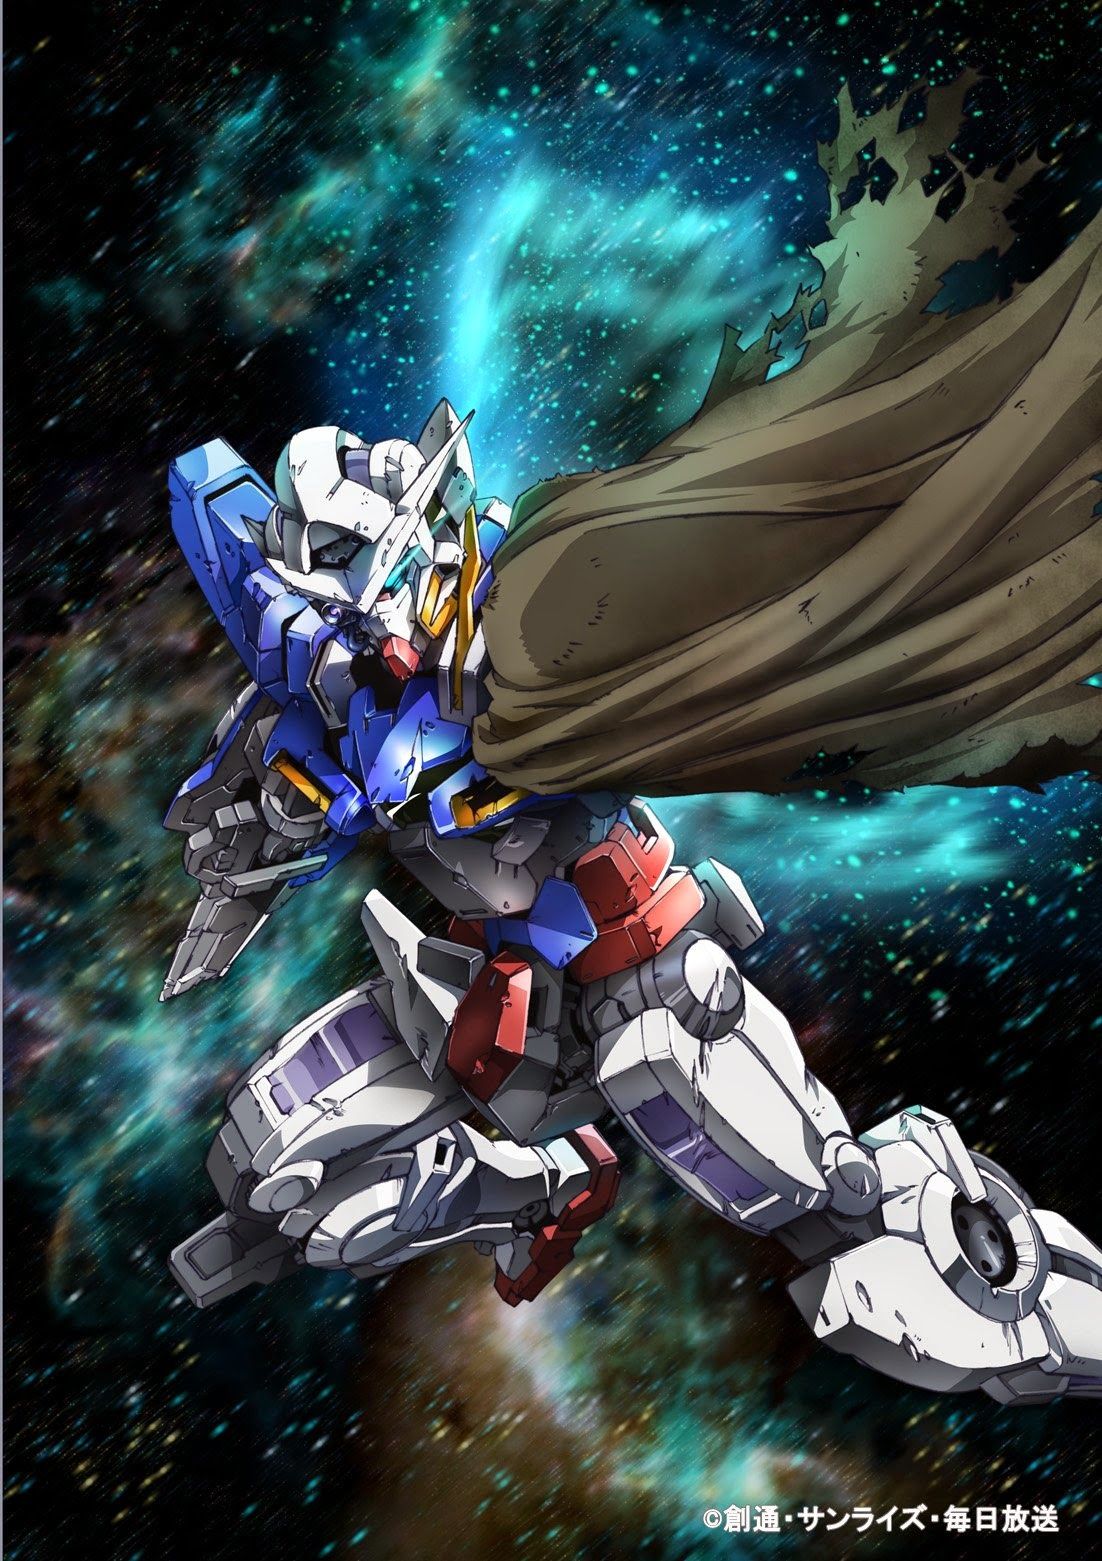 GN 001RE Gundam Exia Repair Wallpaper Poster Image - Gundam Kits